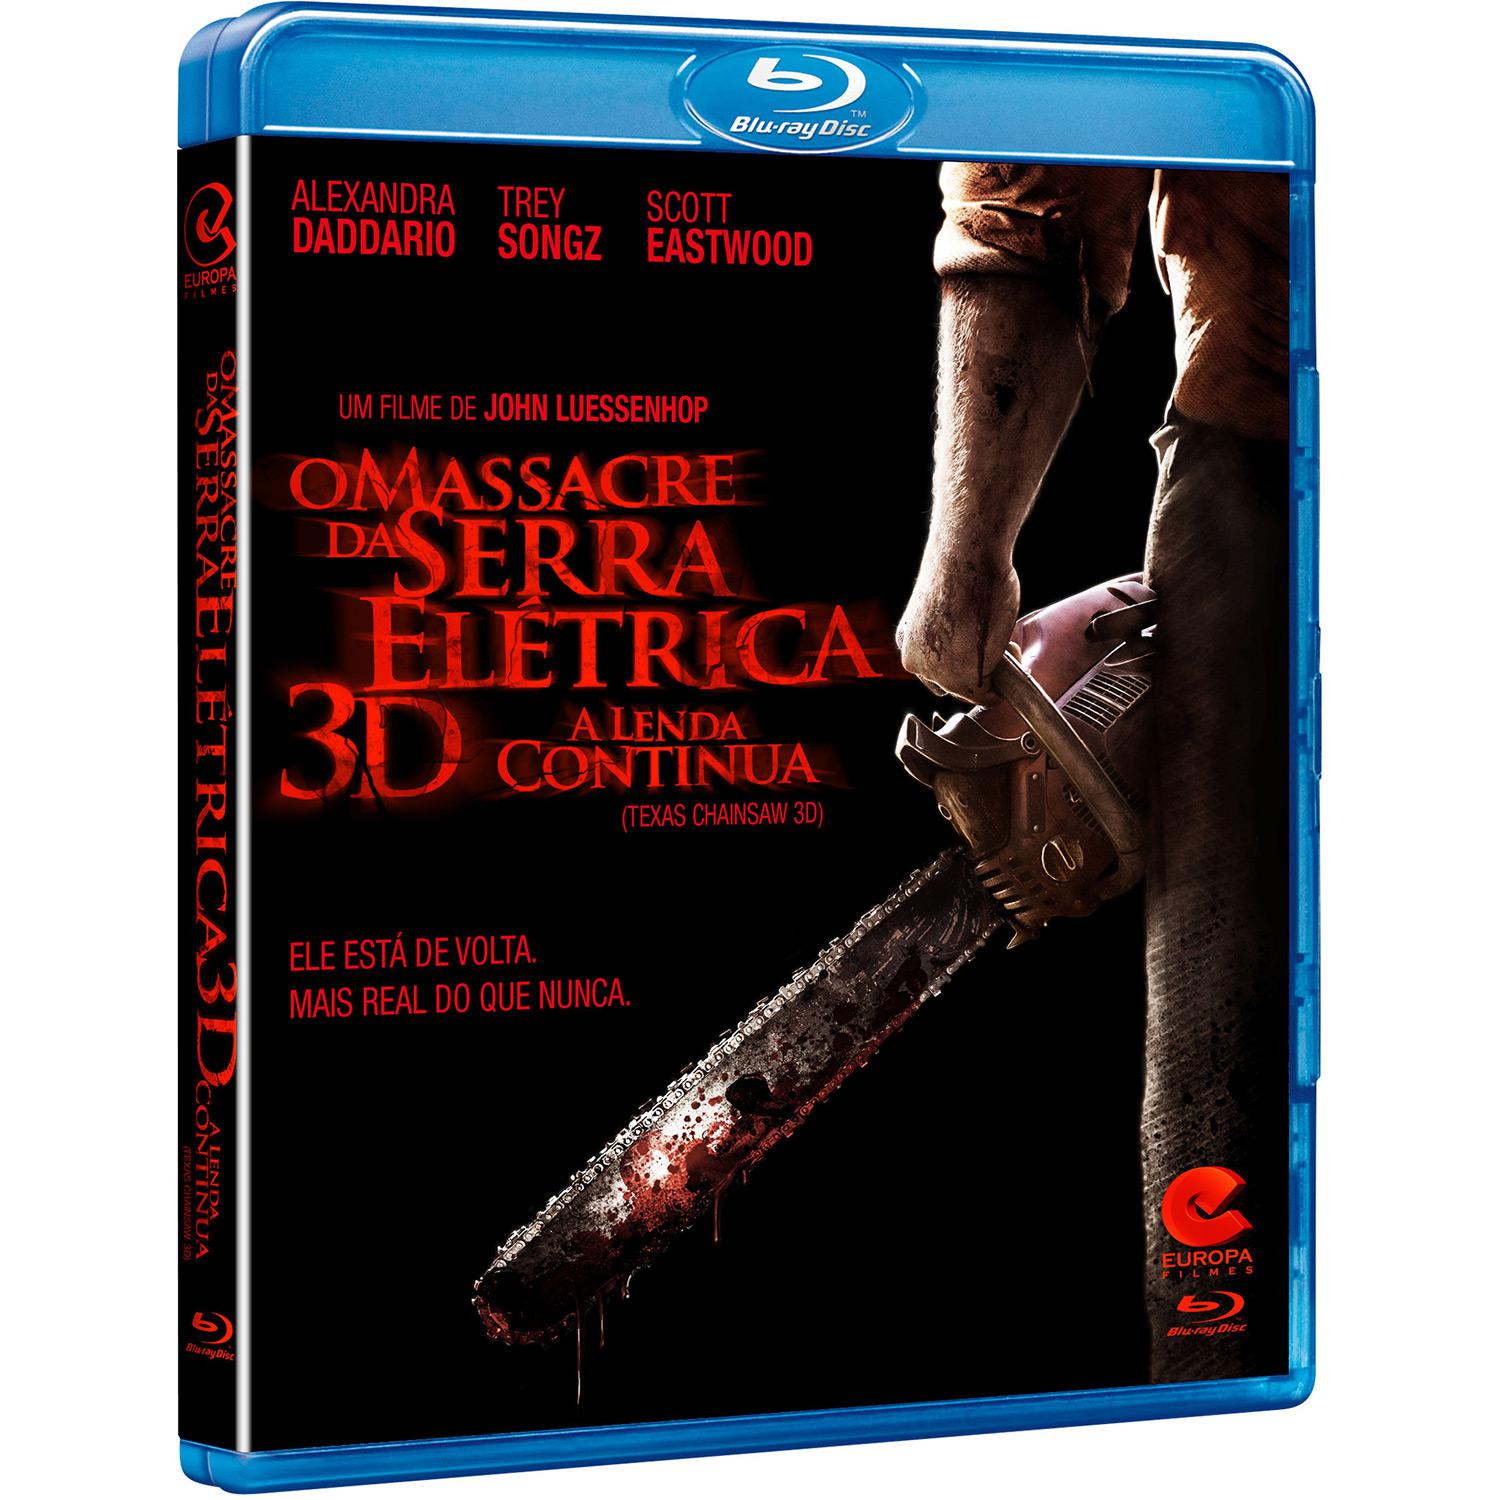 Blu-Ray 3D - O Massacre da Serra Elétrica - A Lenda Continua é bom? Vale a pena?